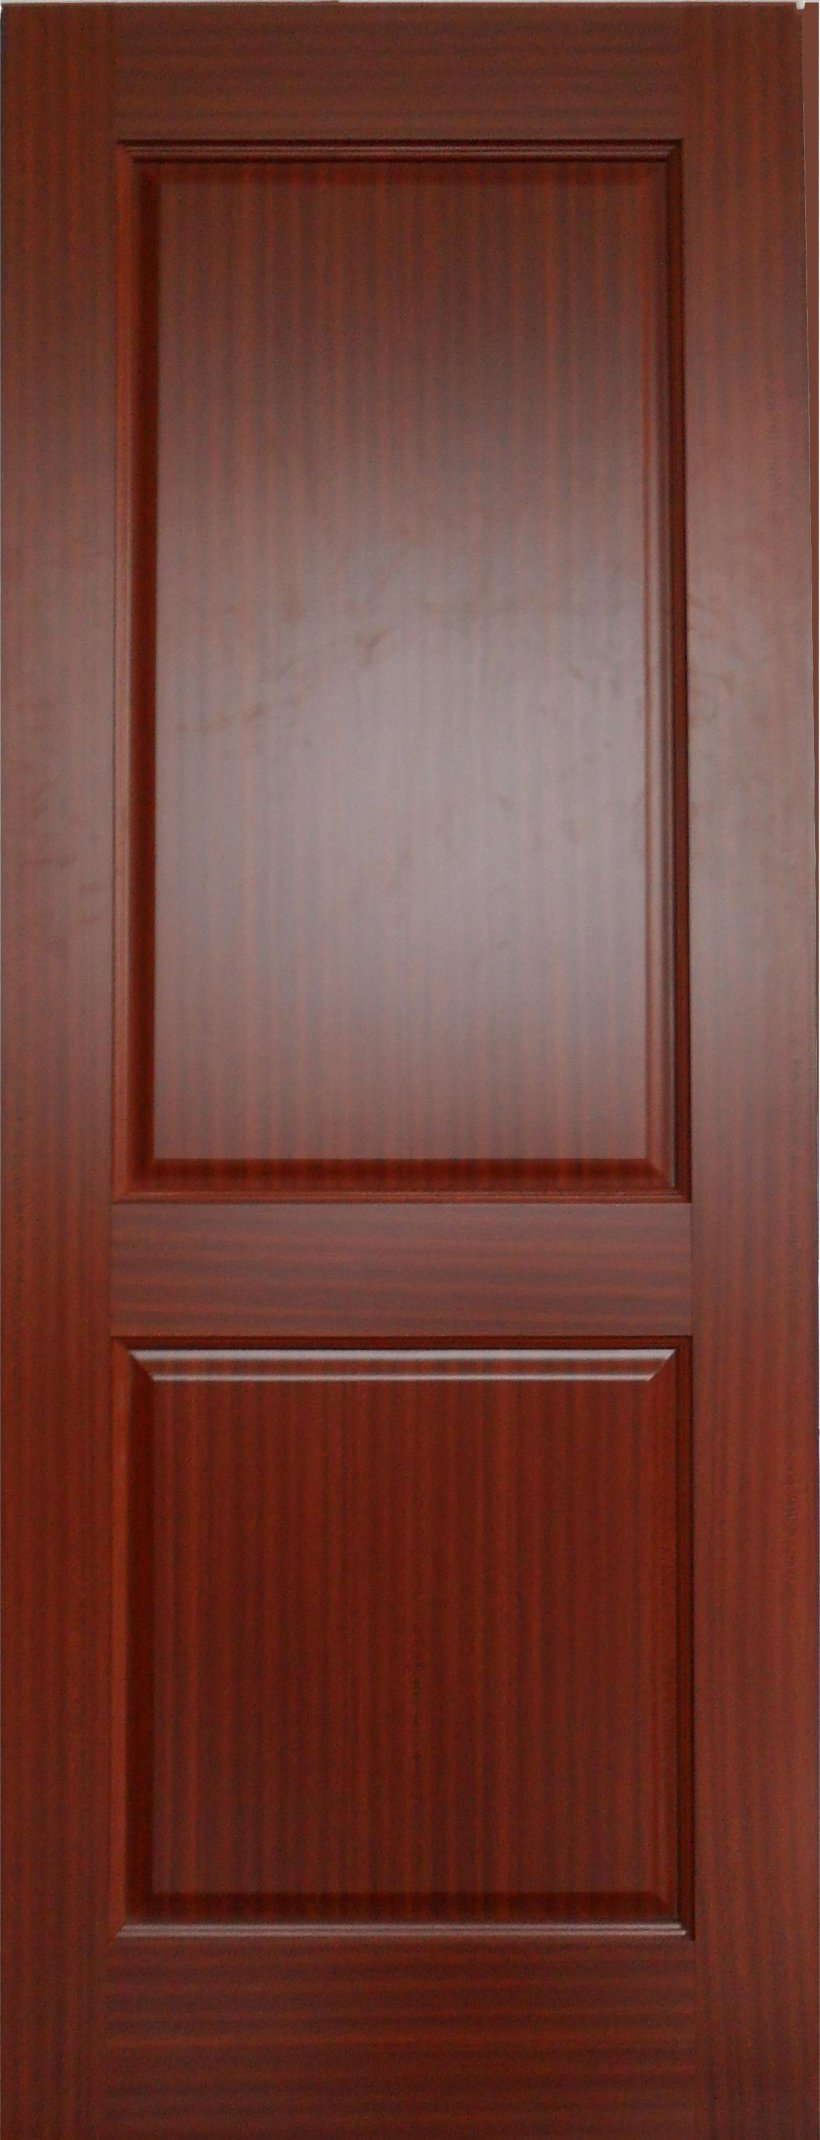 Magazin Dverey Door Glass Plywood Hardwood, PNG, 1344x3508px, Window, Cabinetry, Cupboard, Door, Hardwood Download Free